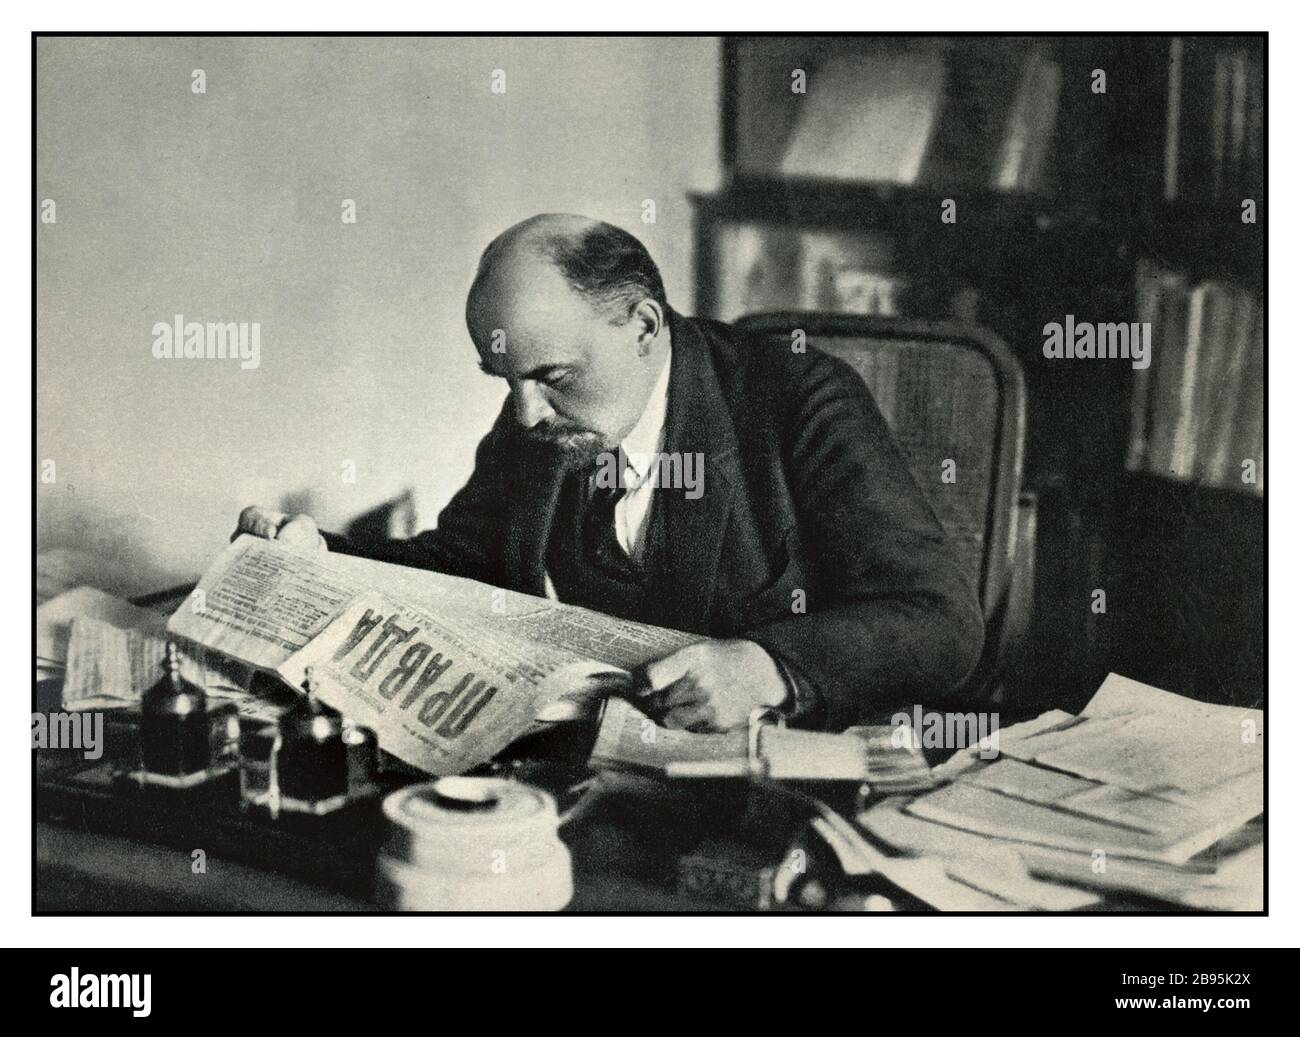 LÉNINE Archive c1918 Vladimir Lénine lisant une copie du journal PRAVDA dans son bureau Moscou URSS (1870-1924) Banque D'Images